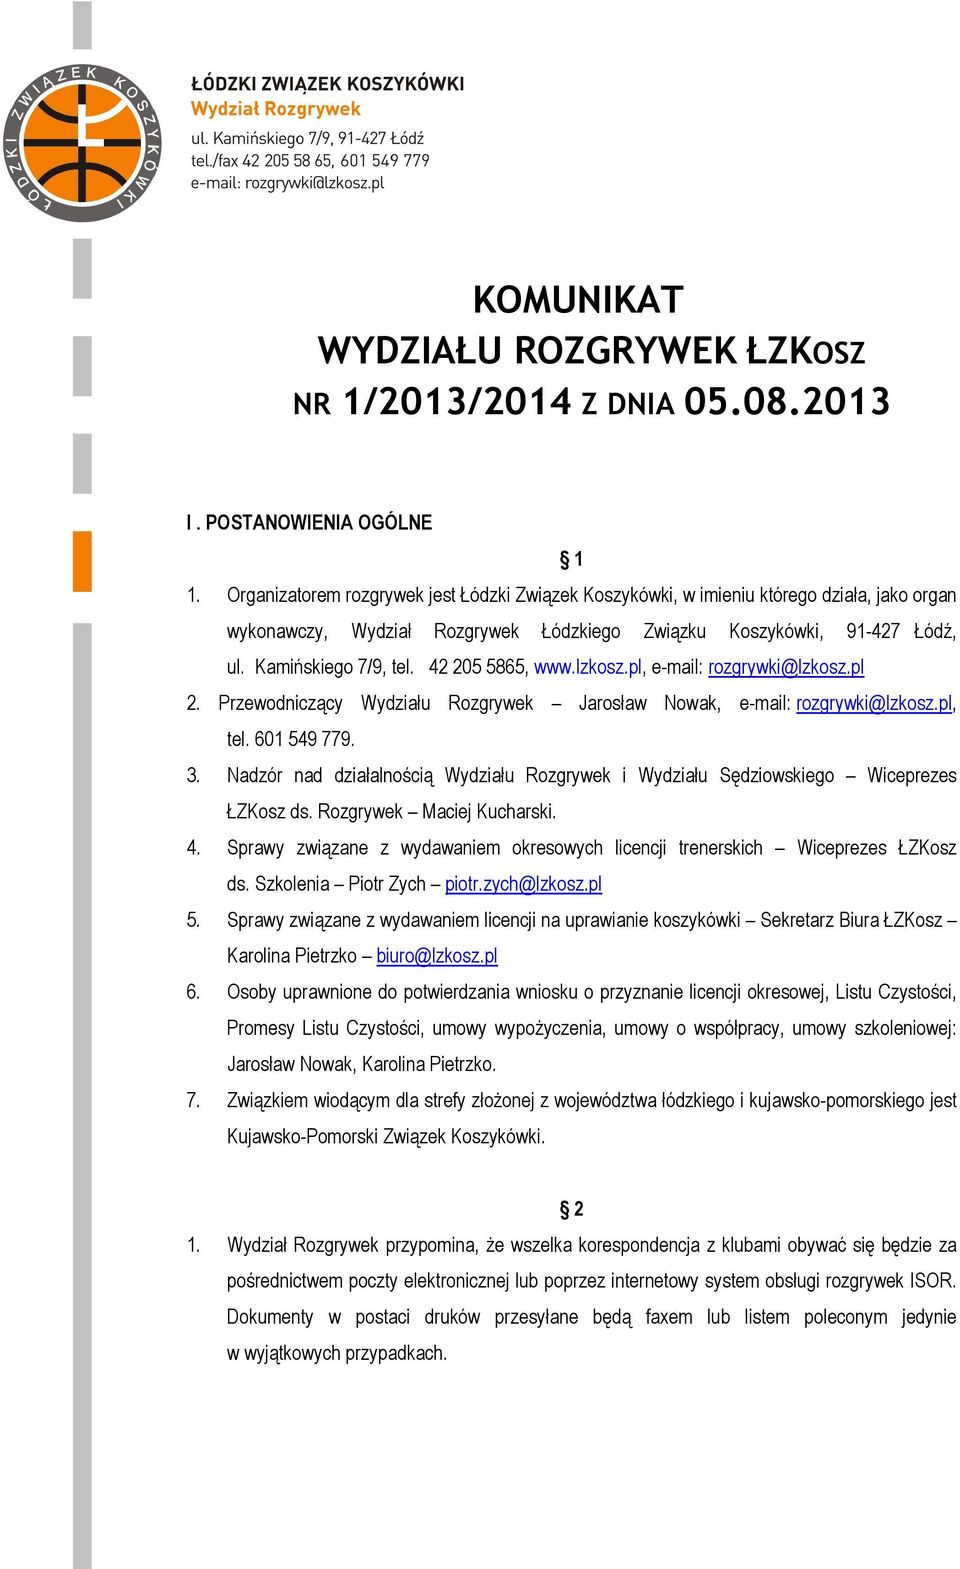 42 205 5865, www.lzkosz.pl, e-mail: rozgrywki@lzkosz.pl 2. Przewodniczący Wydziału Rozgrywek Jarosław Nowak, e-mail: rozgrywki@lzkosz.pl, tel. 601 549 779. 3.